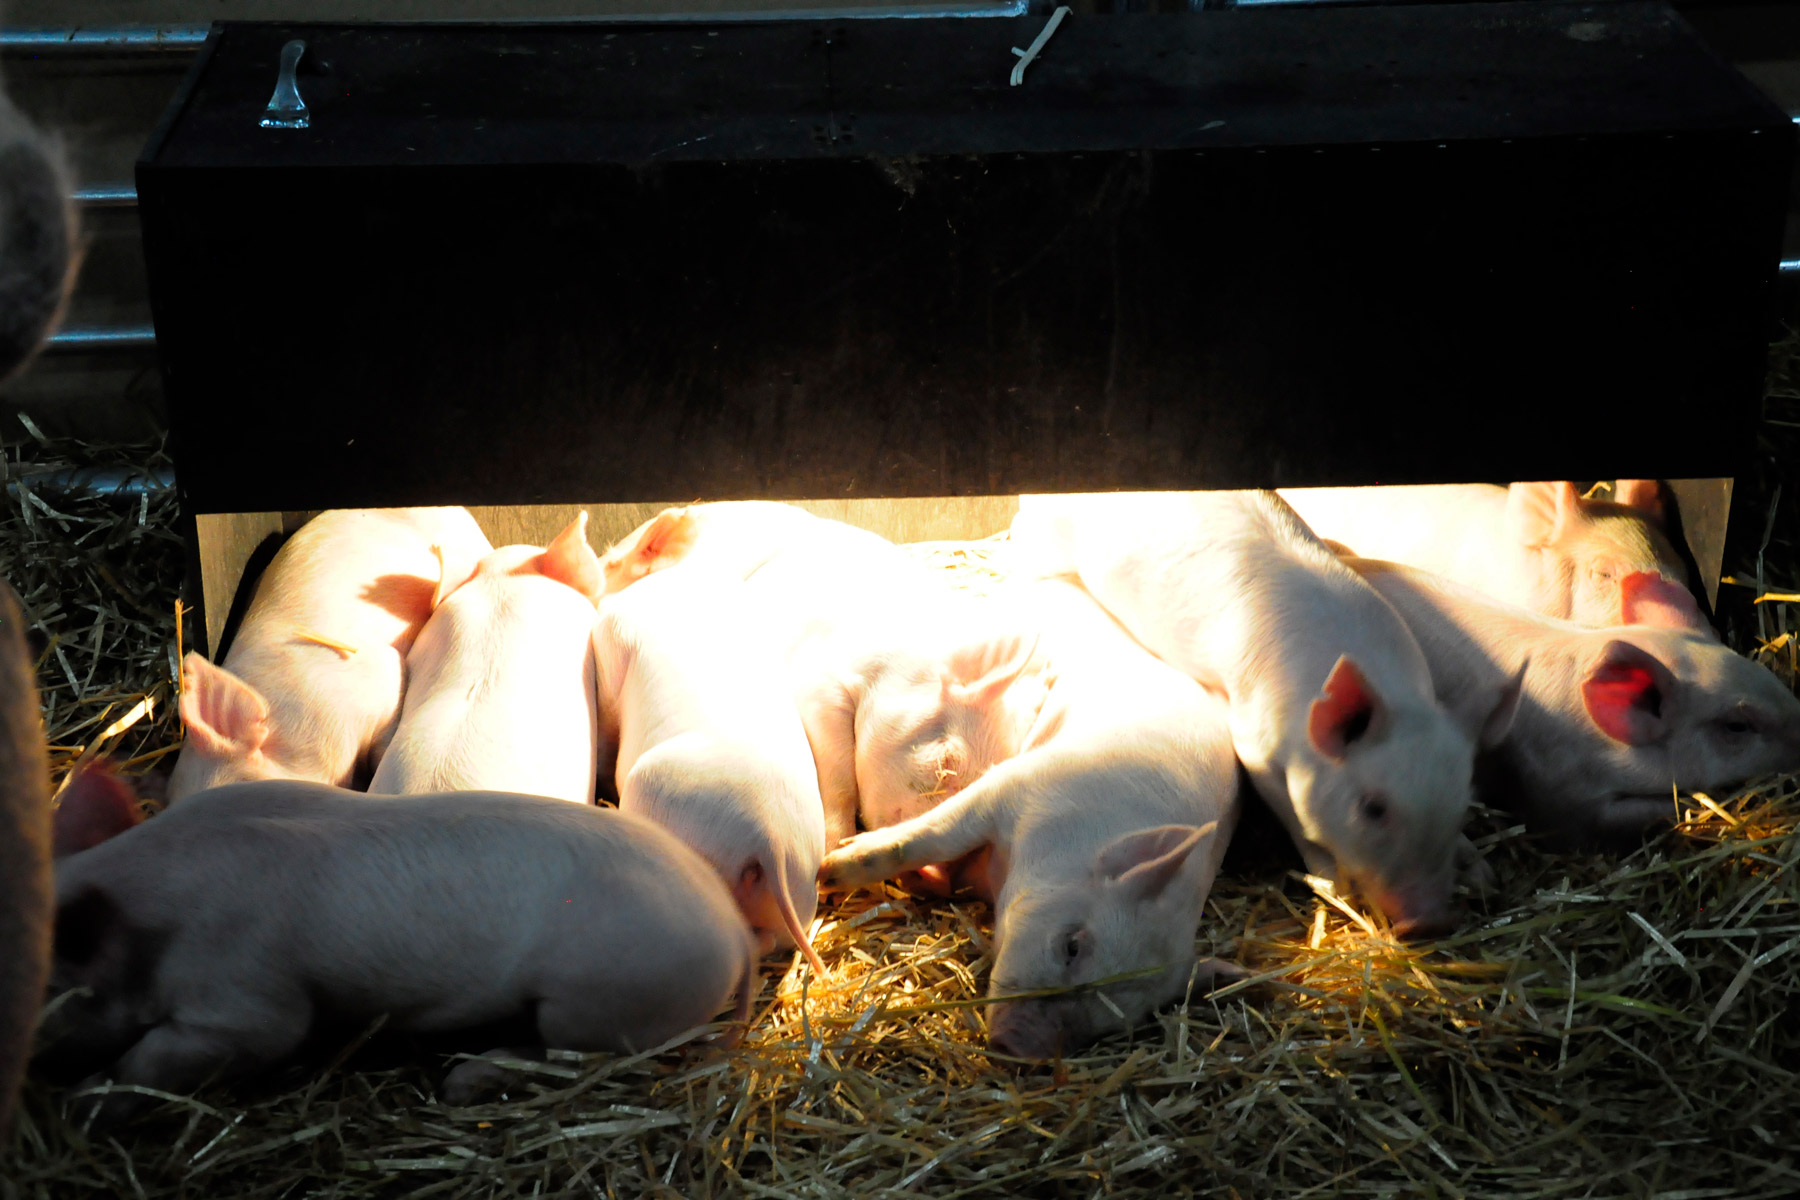 El consumo anual per cápita es de 16.3 kg en carne de porcino